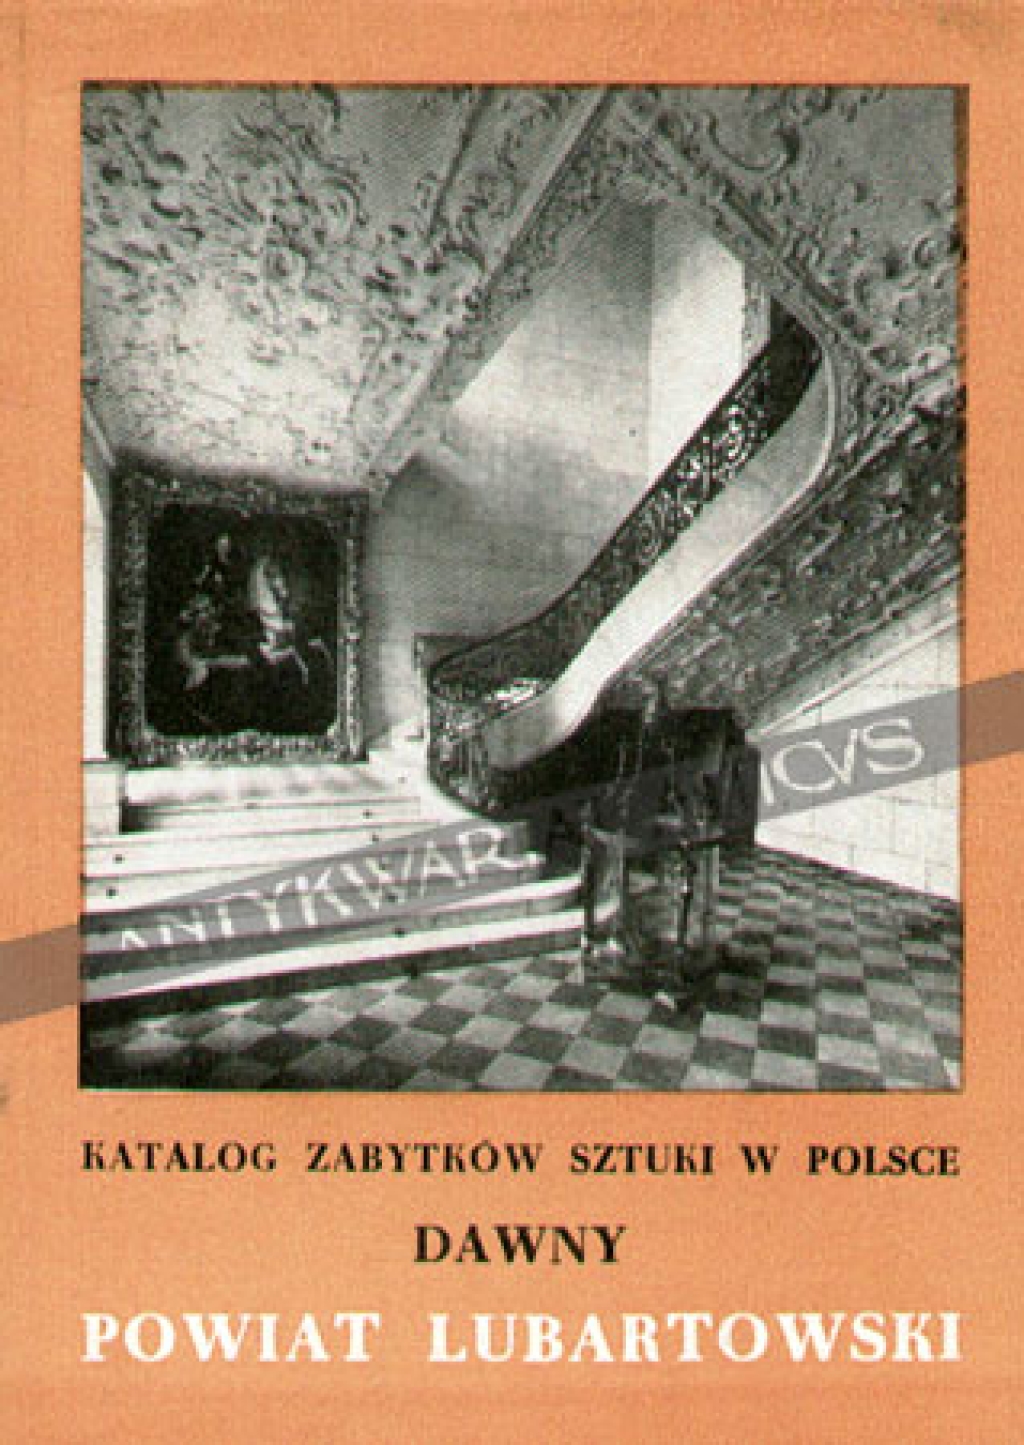 Katalog zabytków sztuki w Polsce, t. VIII: dawne województwo lubelskie, zeszyt 11: dawny powiat lubartowski